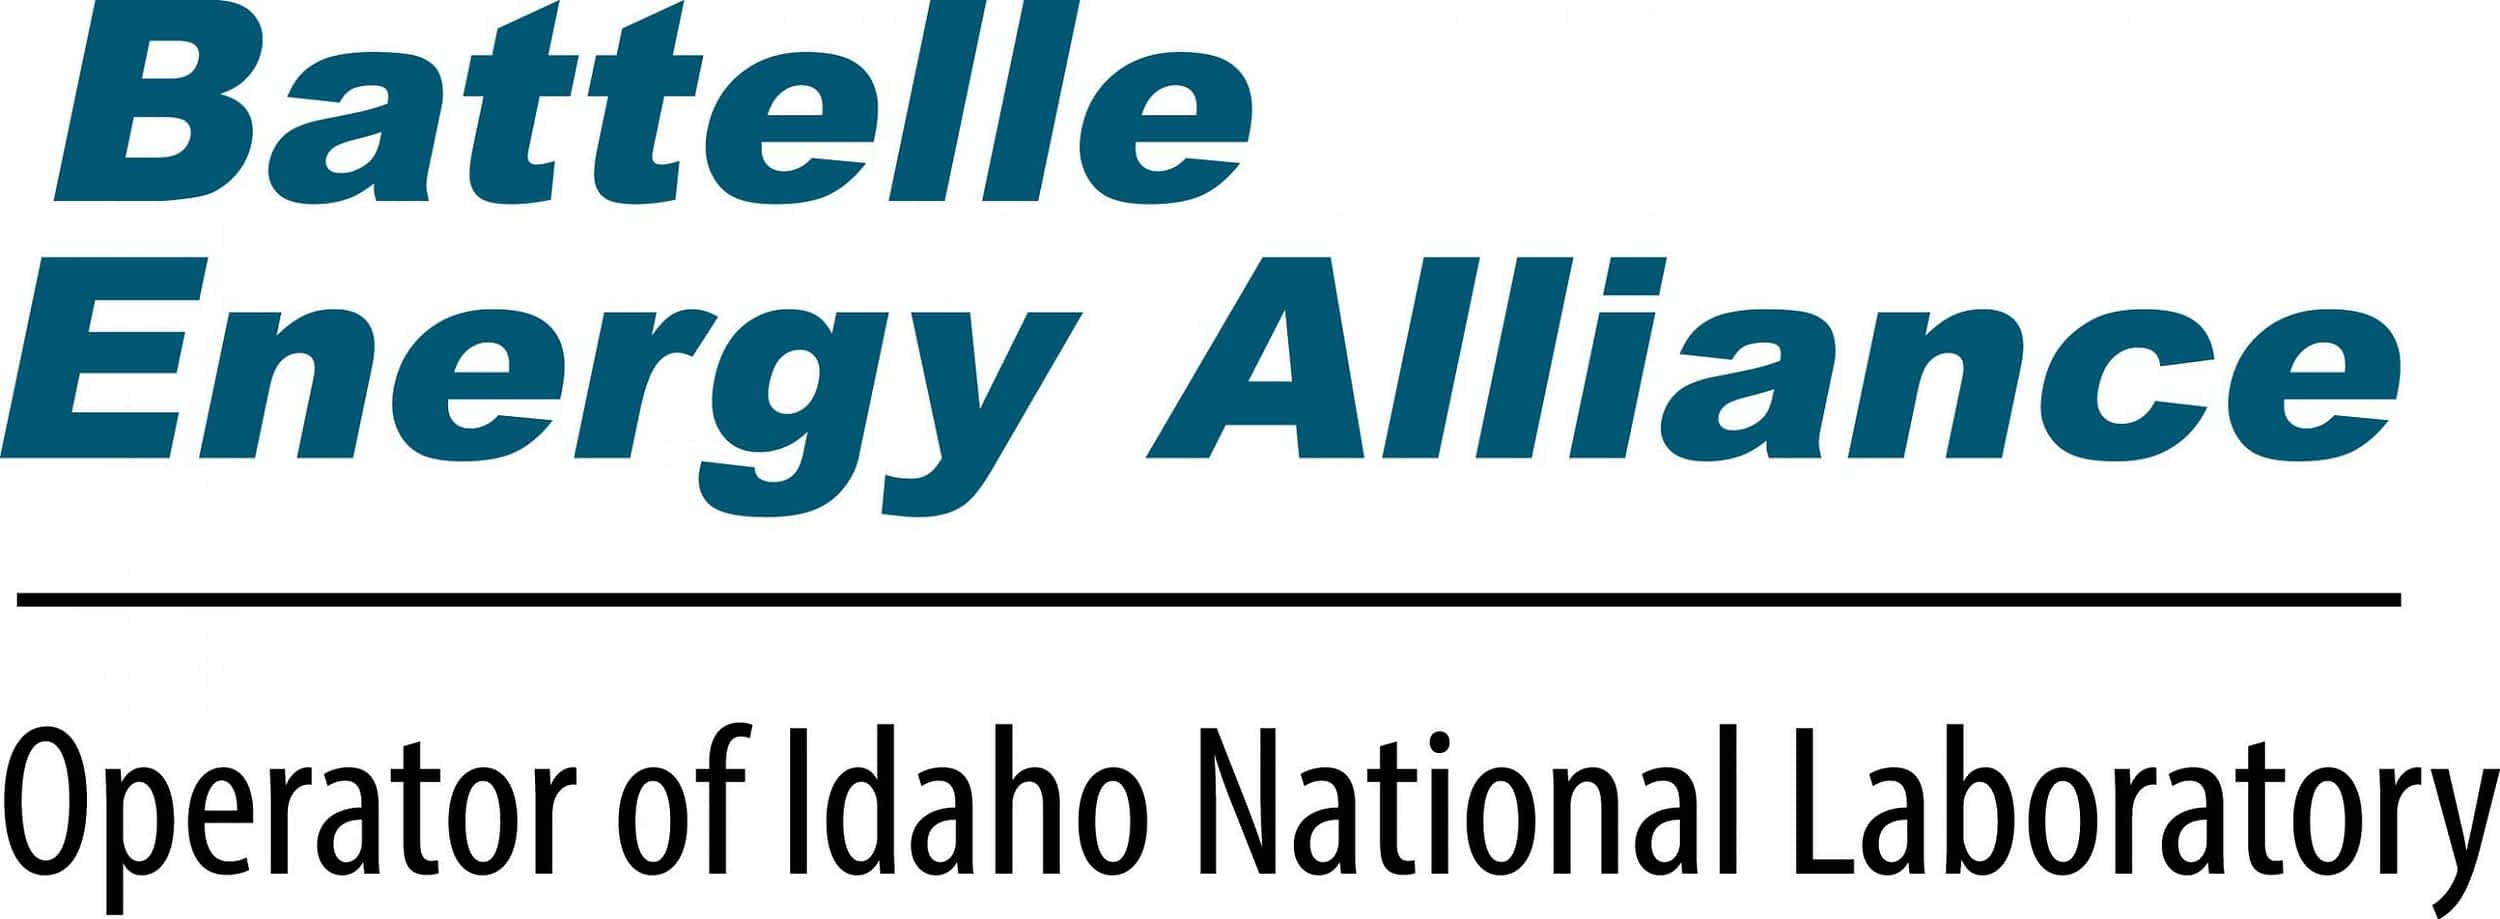 Battelle Energy Alliance – Idaho National Laboratory